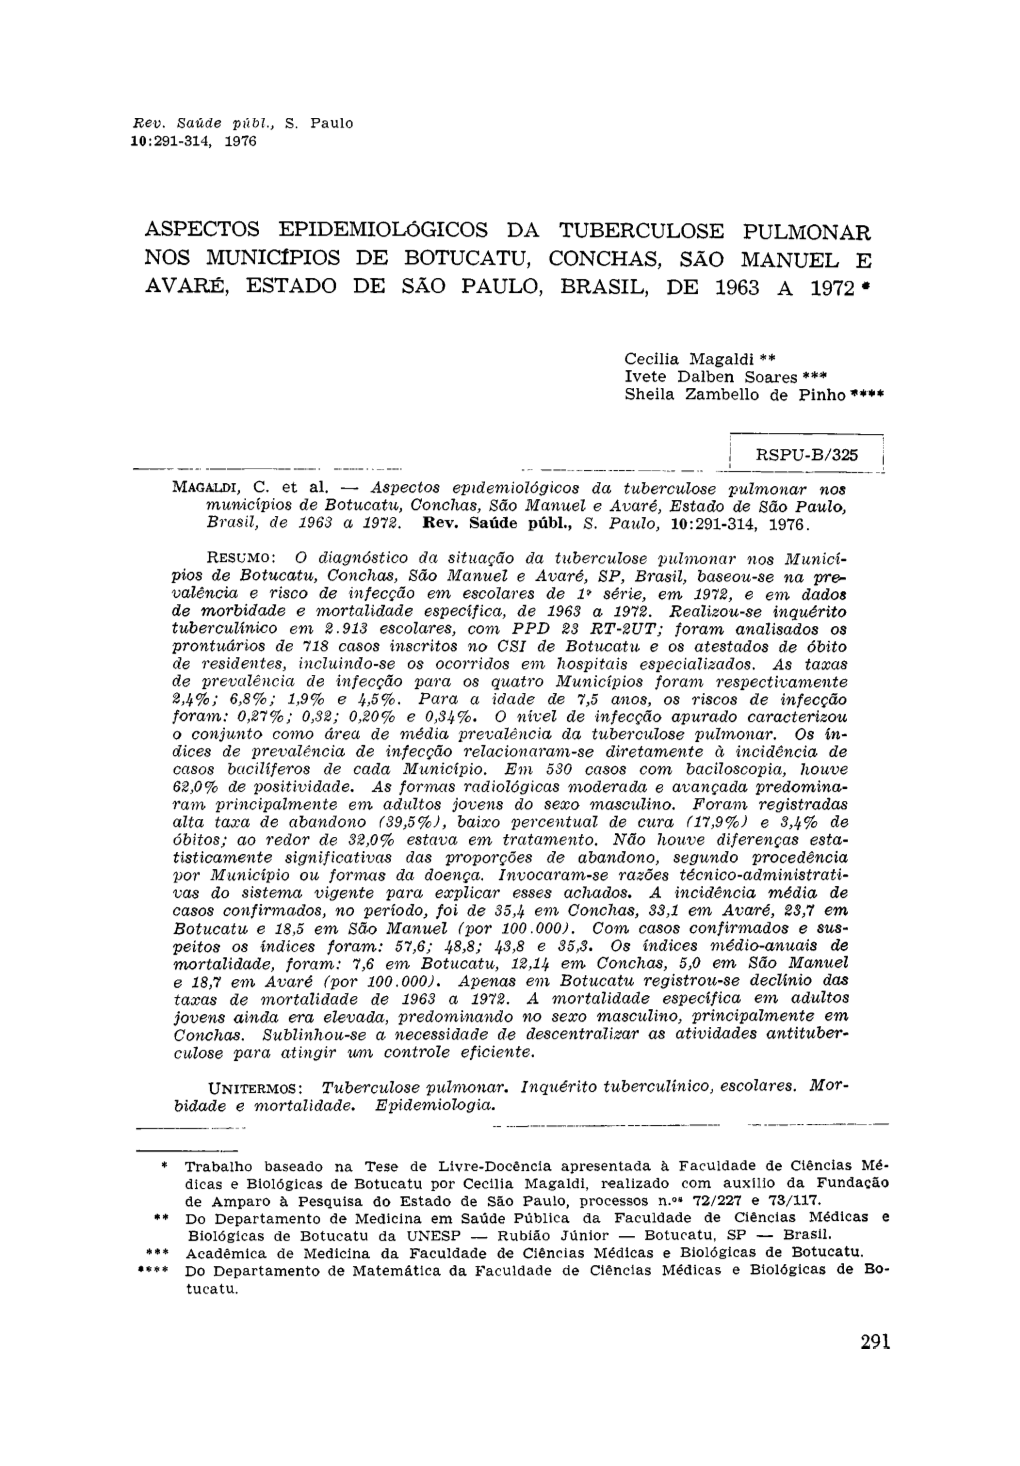 Aspectos Epidemiológicos Da Tuberculose Pulmonar Nos Municípios De Botucatu, Conchas, São Manuel E Avaré, Estado De São Paulo, Brasil, De 1963 a 1972 *